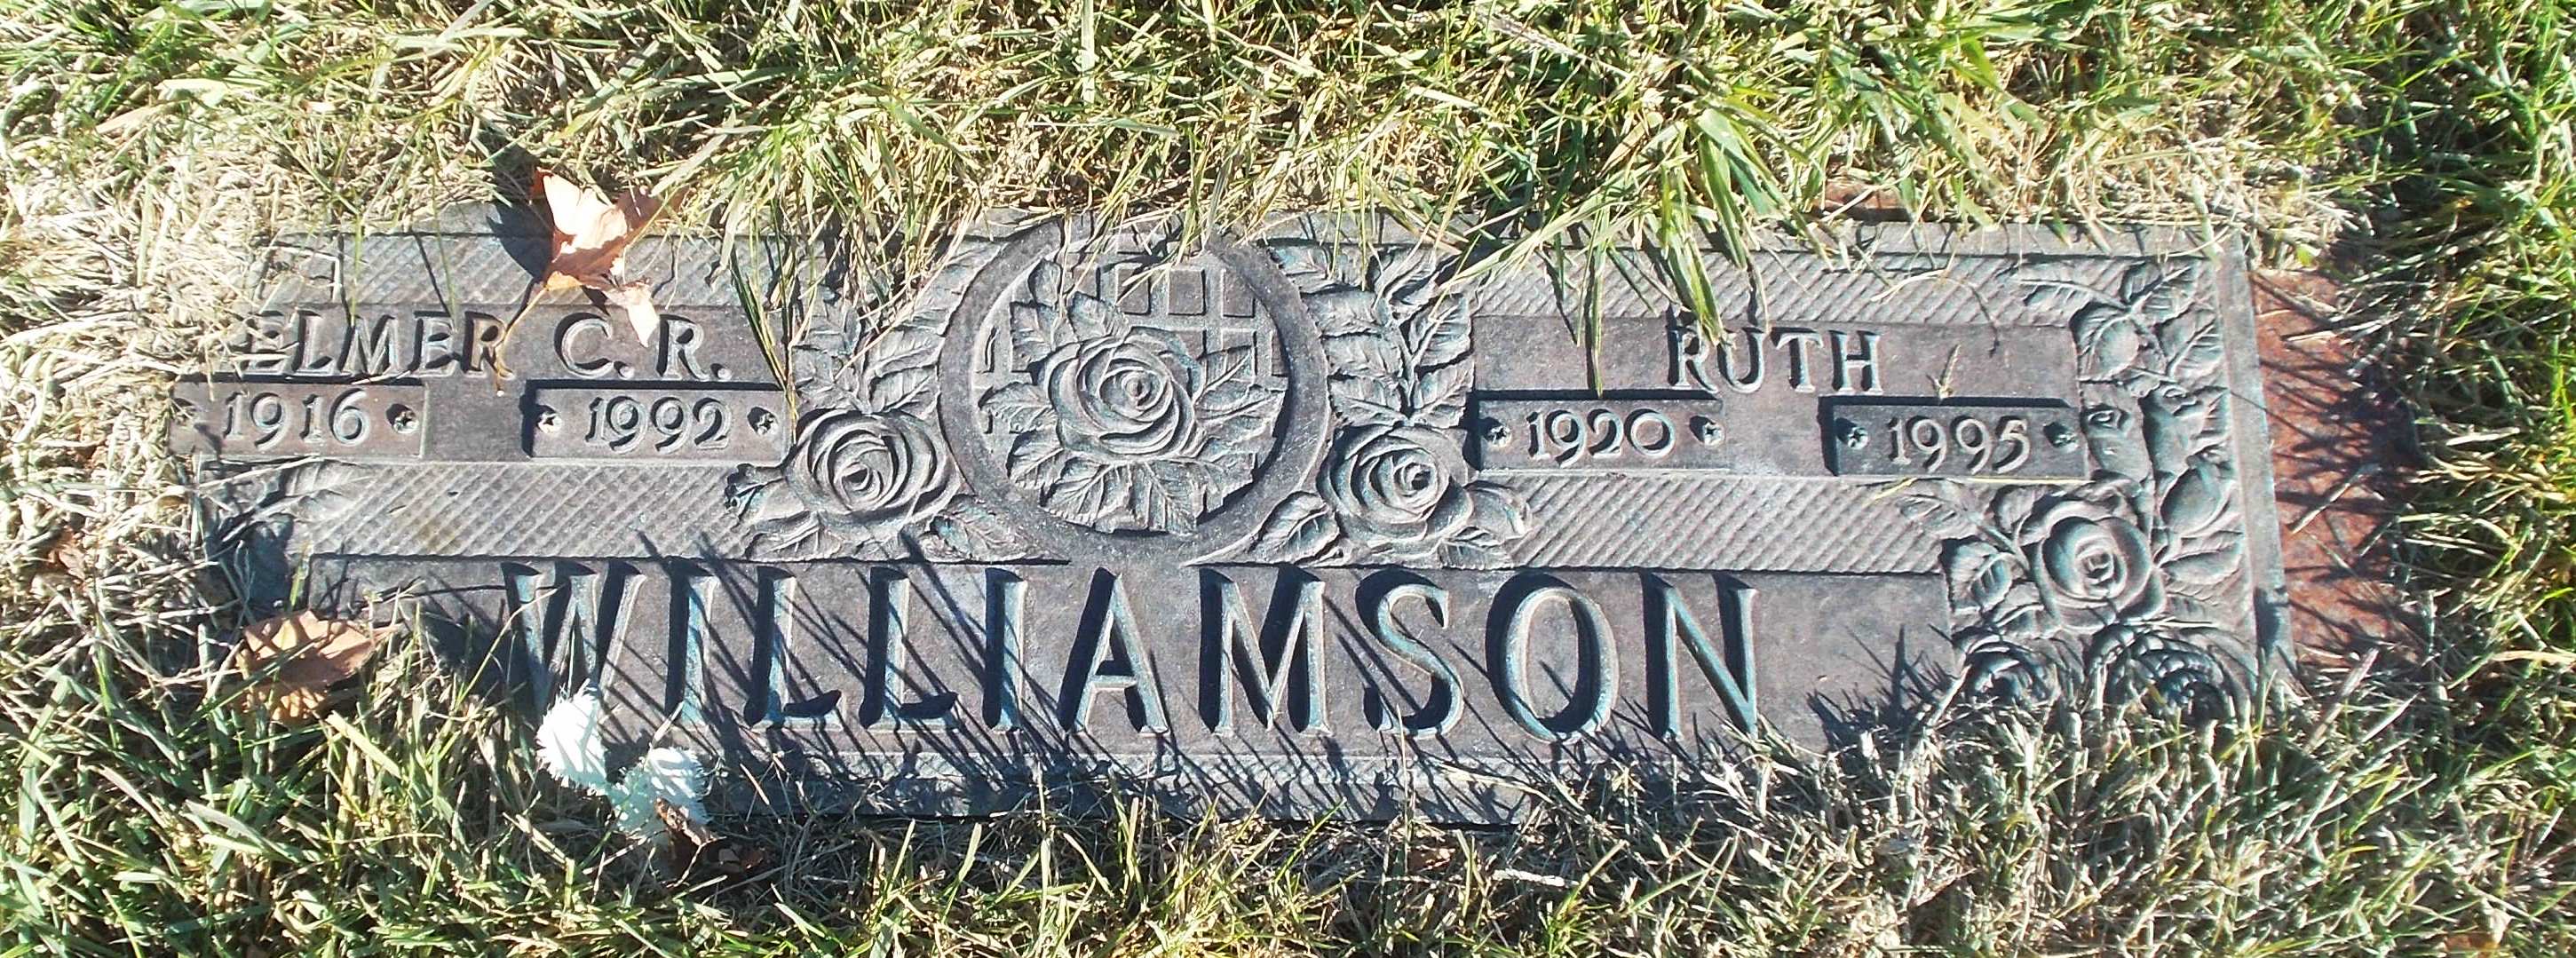 Elmer C R Williamson